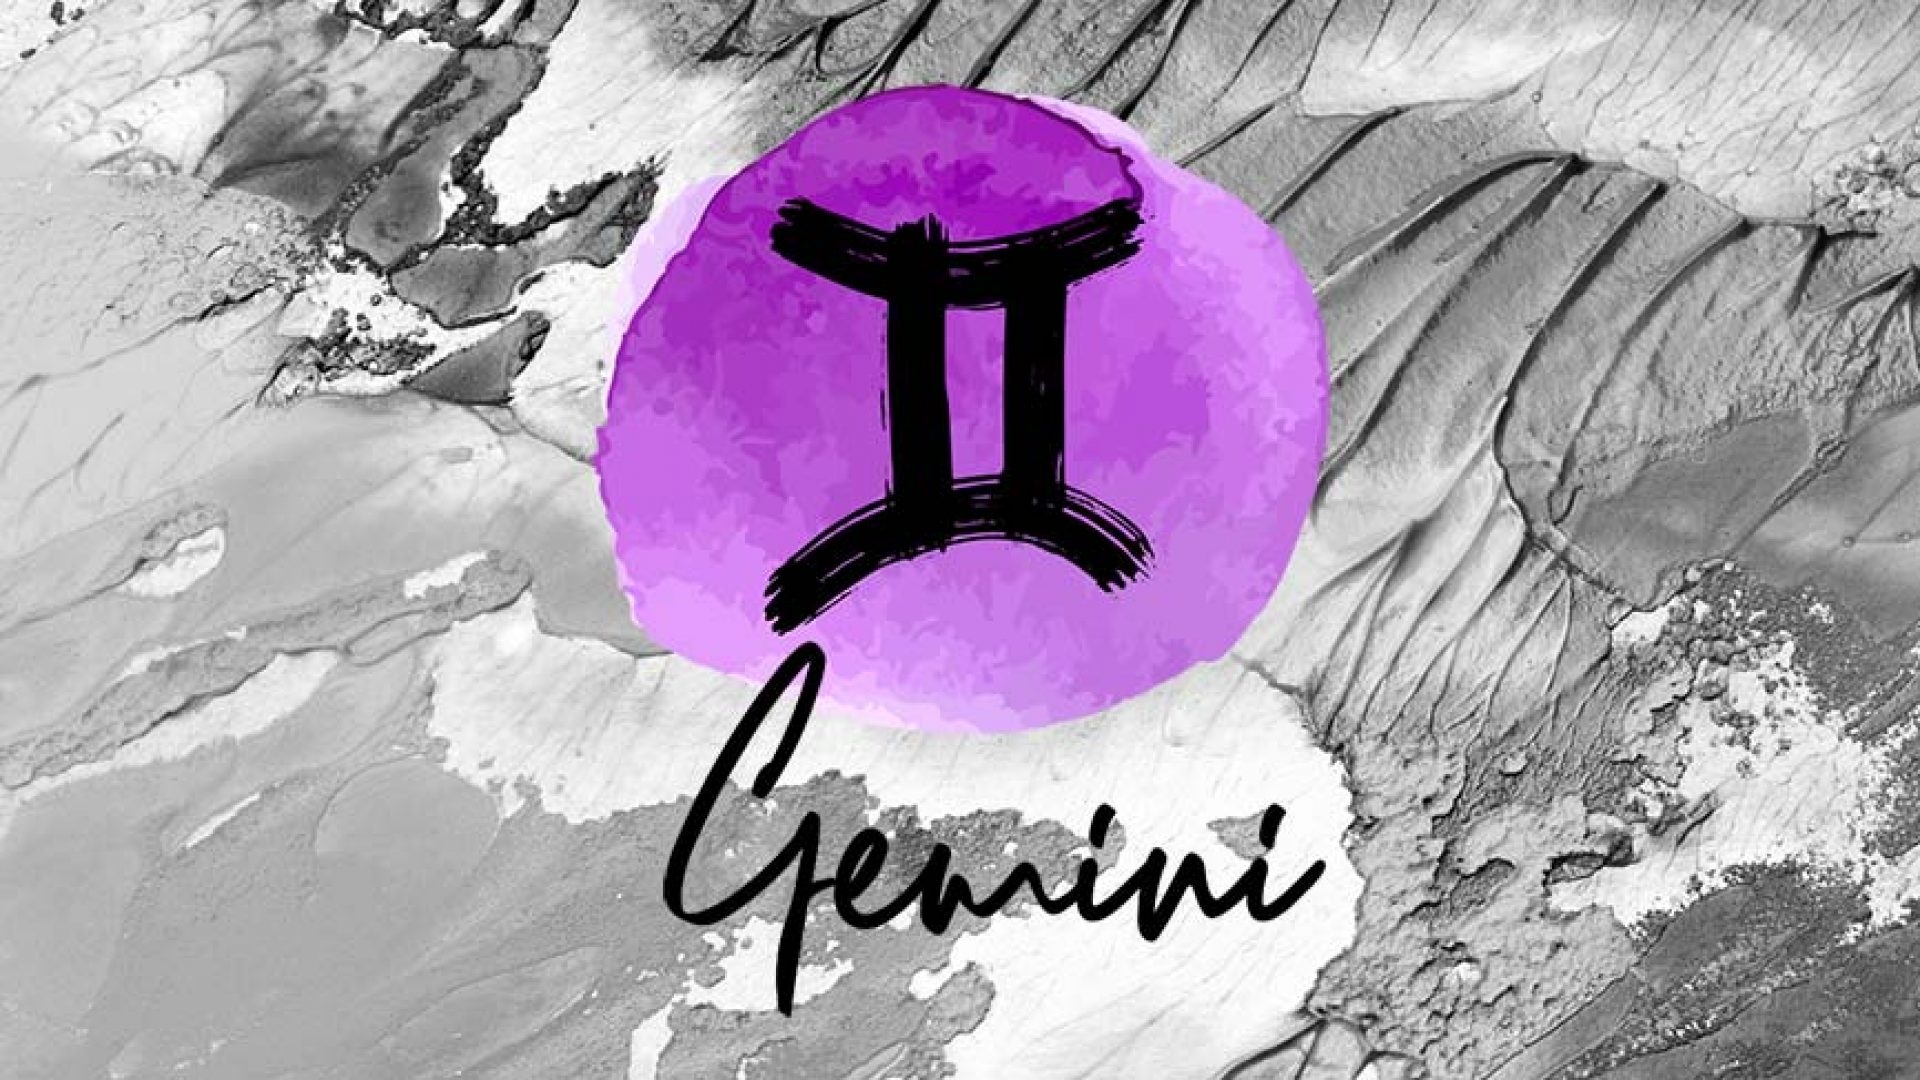 Gemini. Photo: GQInida